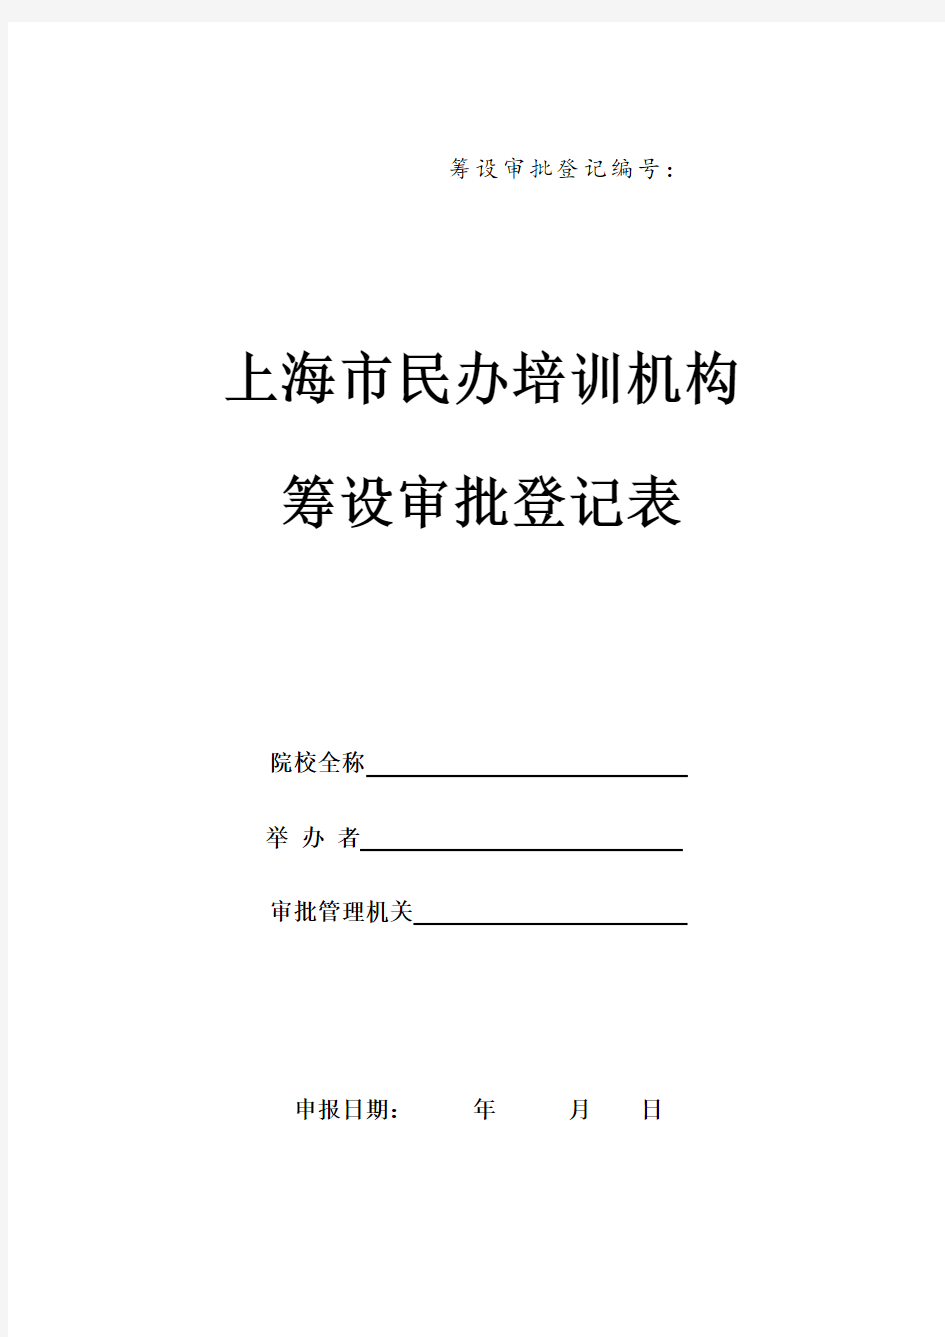 上海市民办培训机构筹设审批登记表